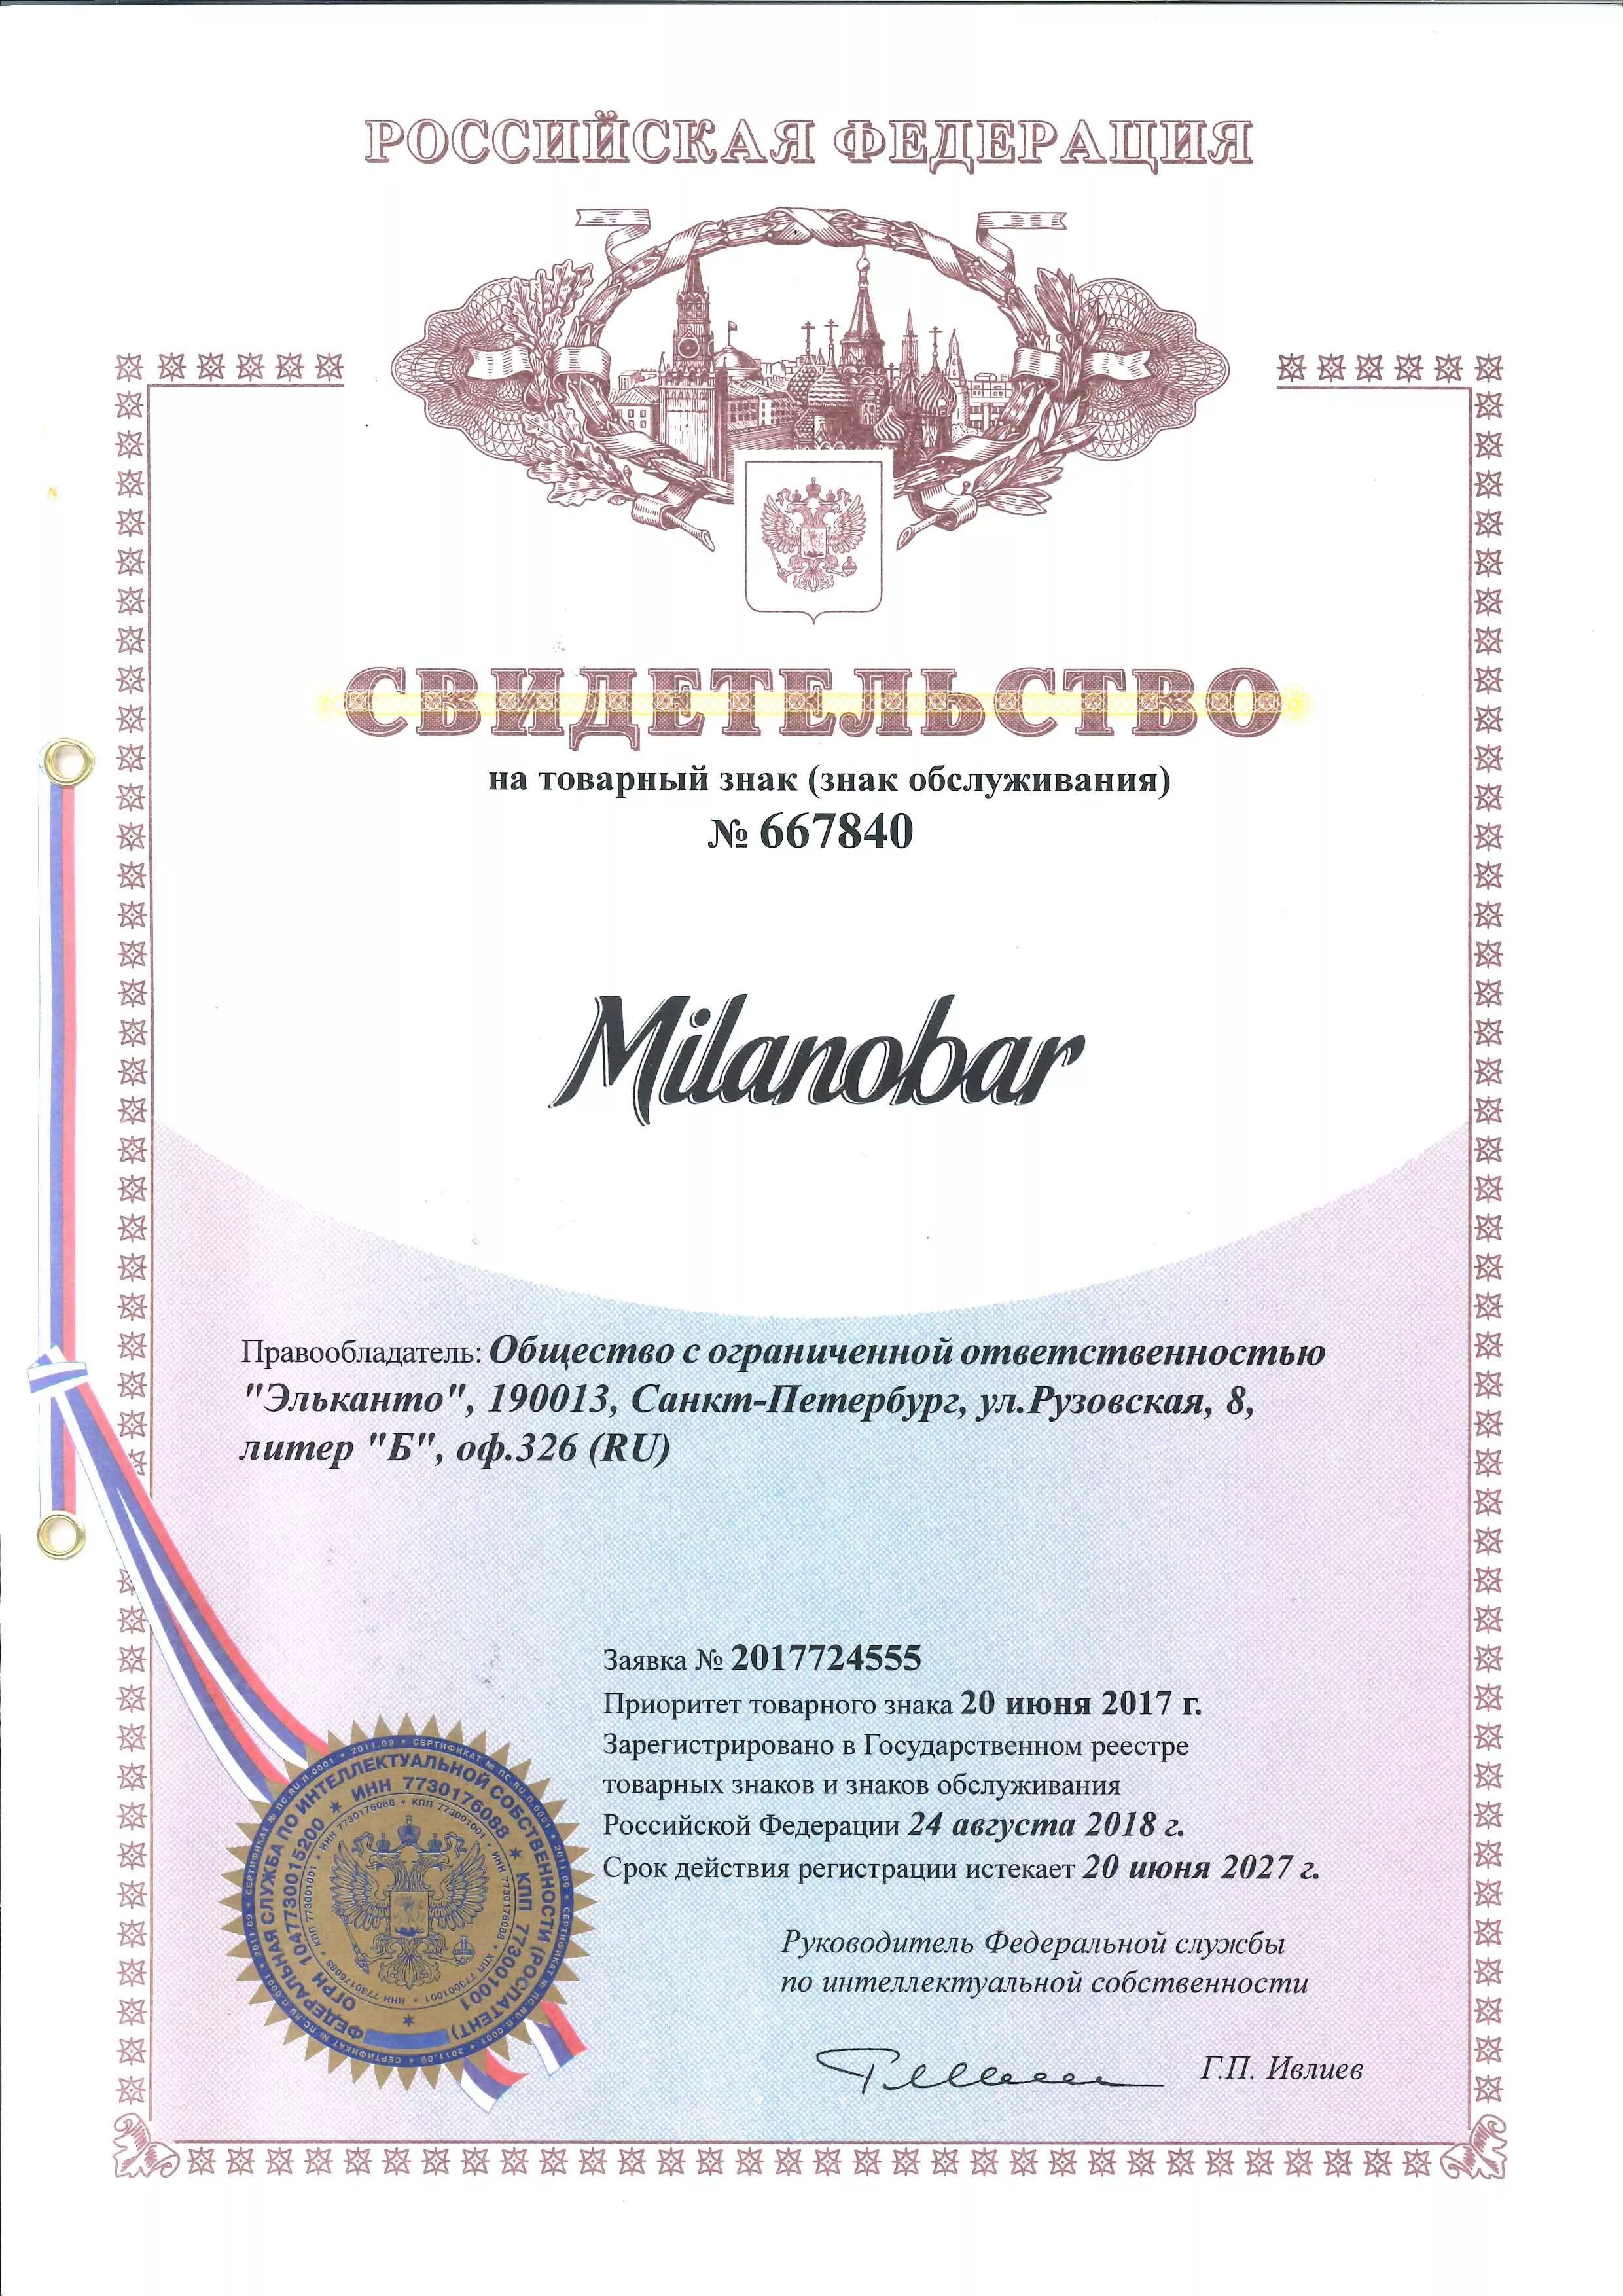 Свидетельство о регистрации ТЗ Milanobar